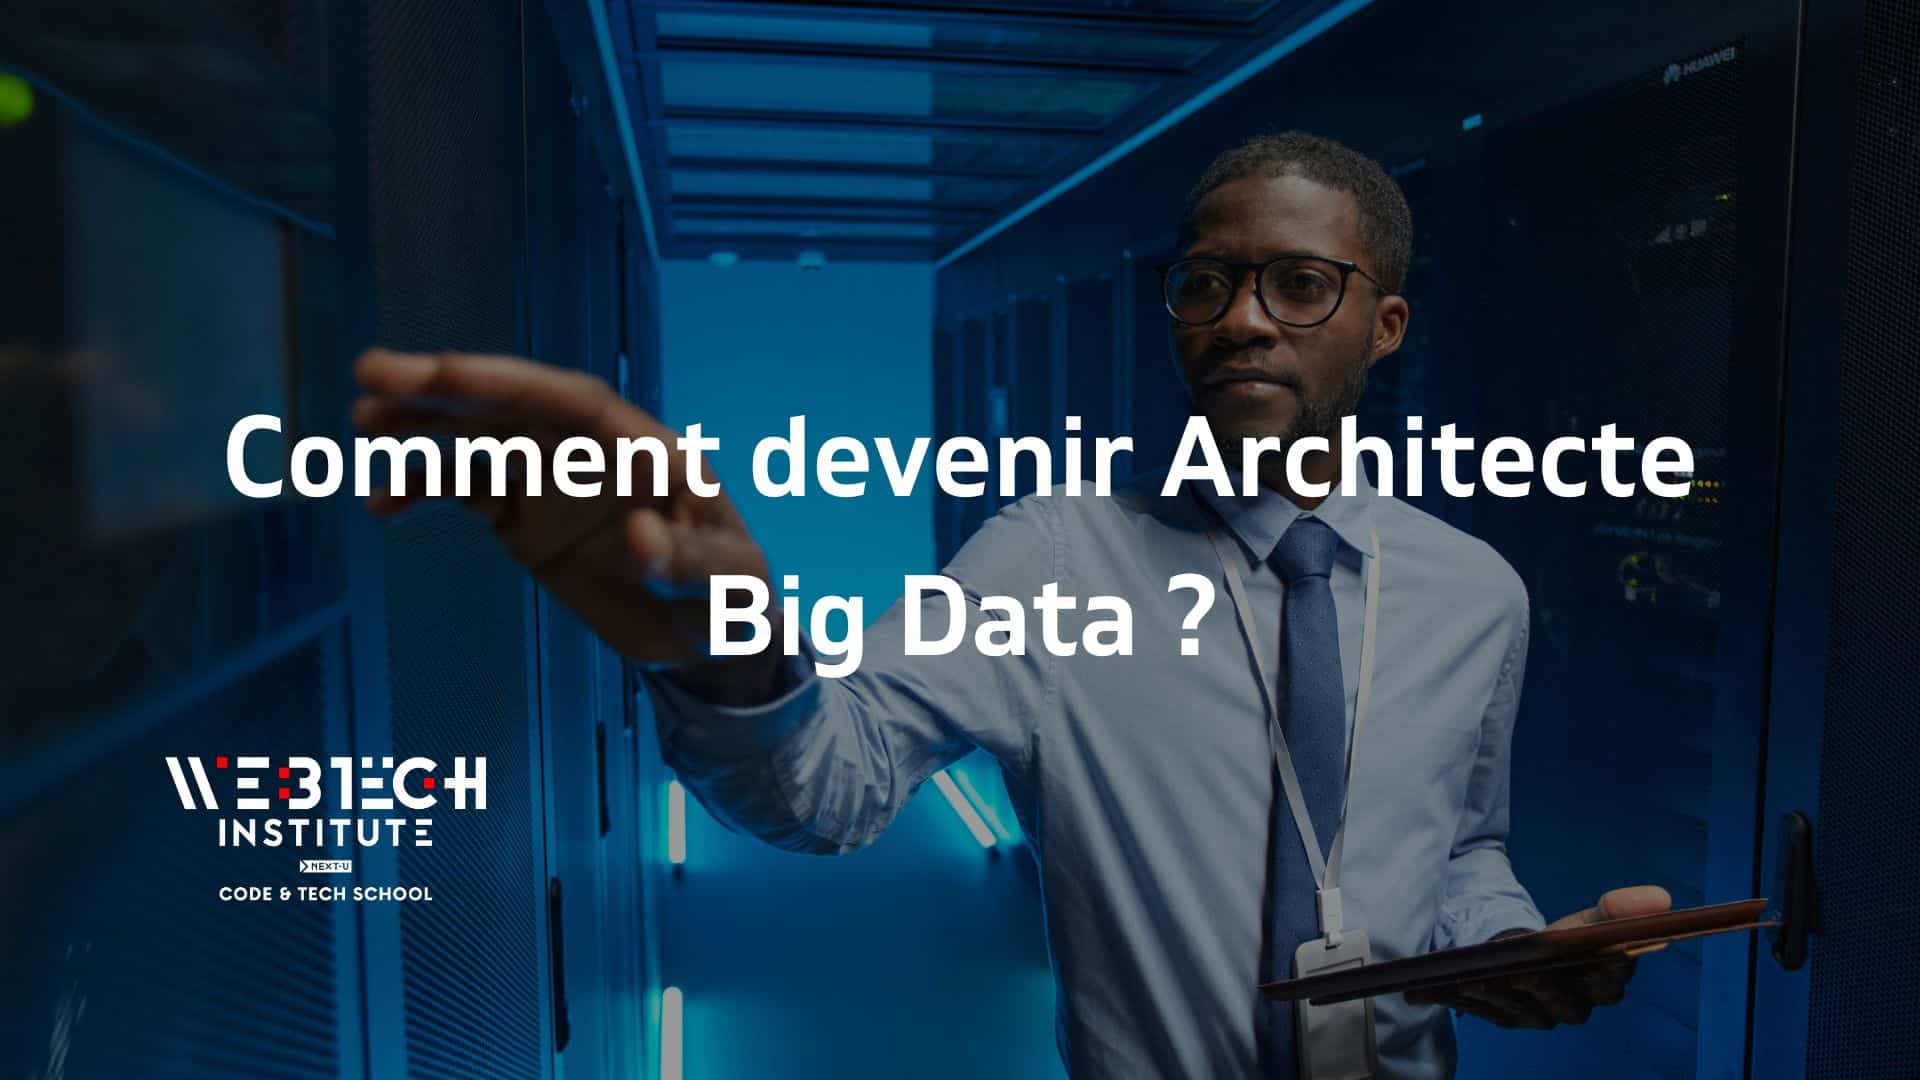 Un professionnel de la technologie dans un data center avec un texte 'Comment devenir Architecte Big Data ?' affiché, symbolisant la formation en Big Data par WEBTECH Institute.